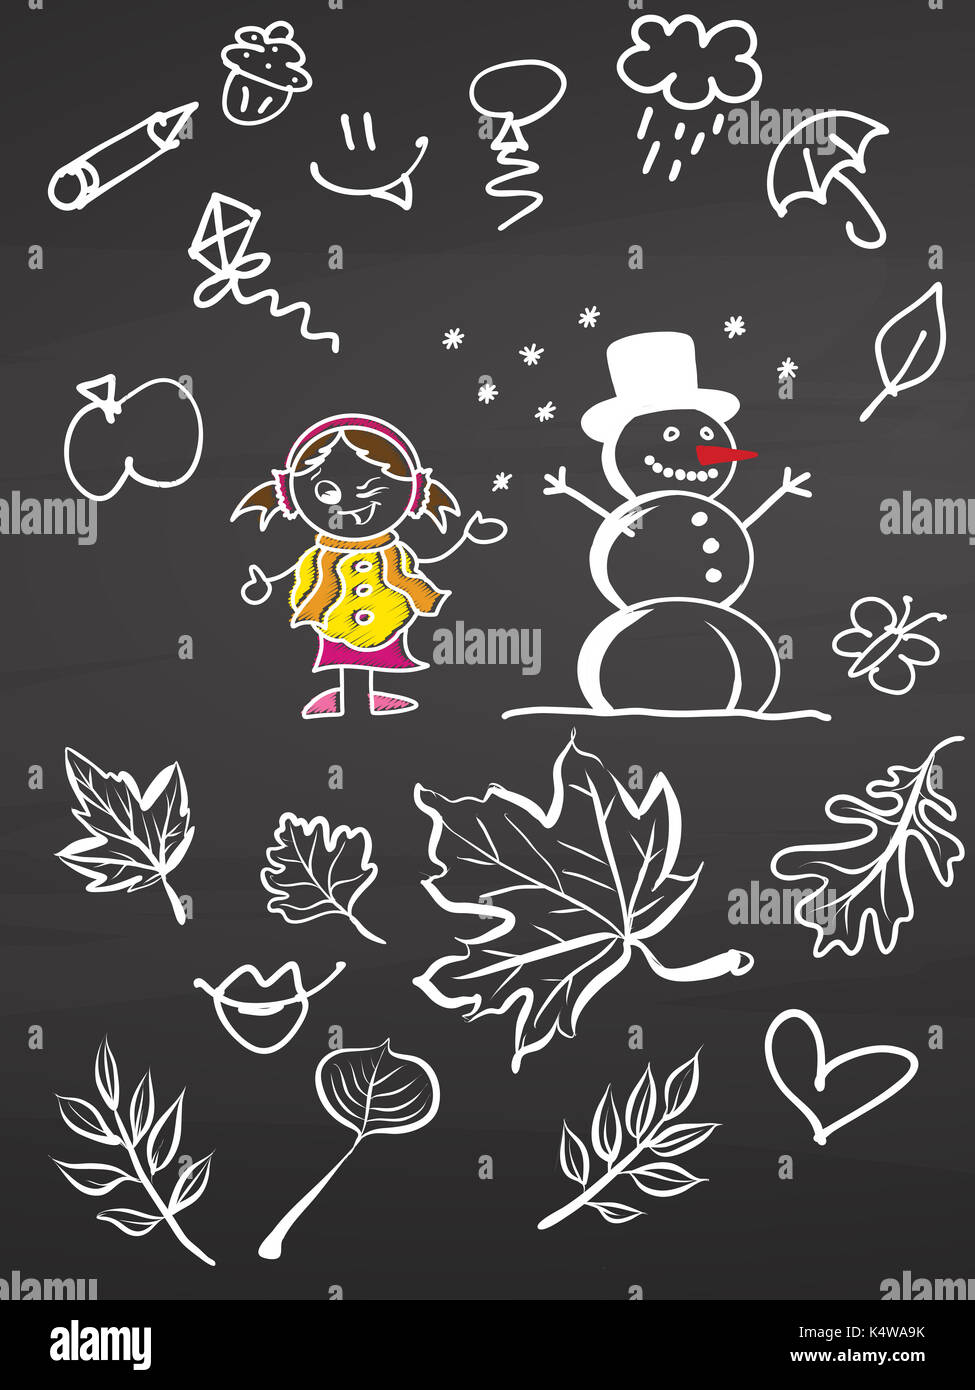 Petite fille et bonhomme avec doodles on chalkboard, vector handdrawn sketch, propre, style vintage tableau noir. Banque D'Images